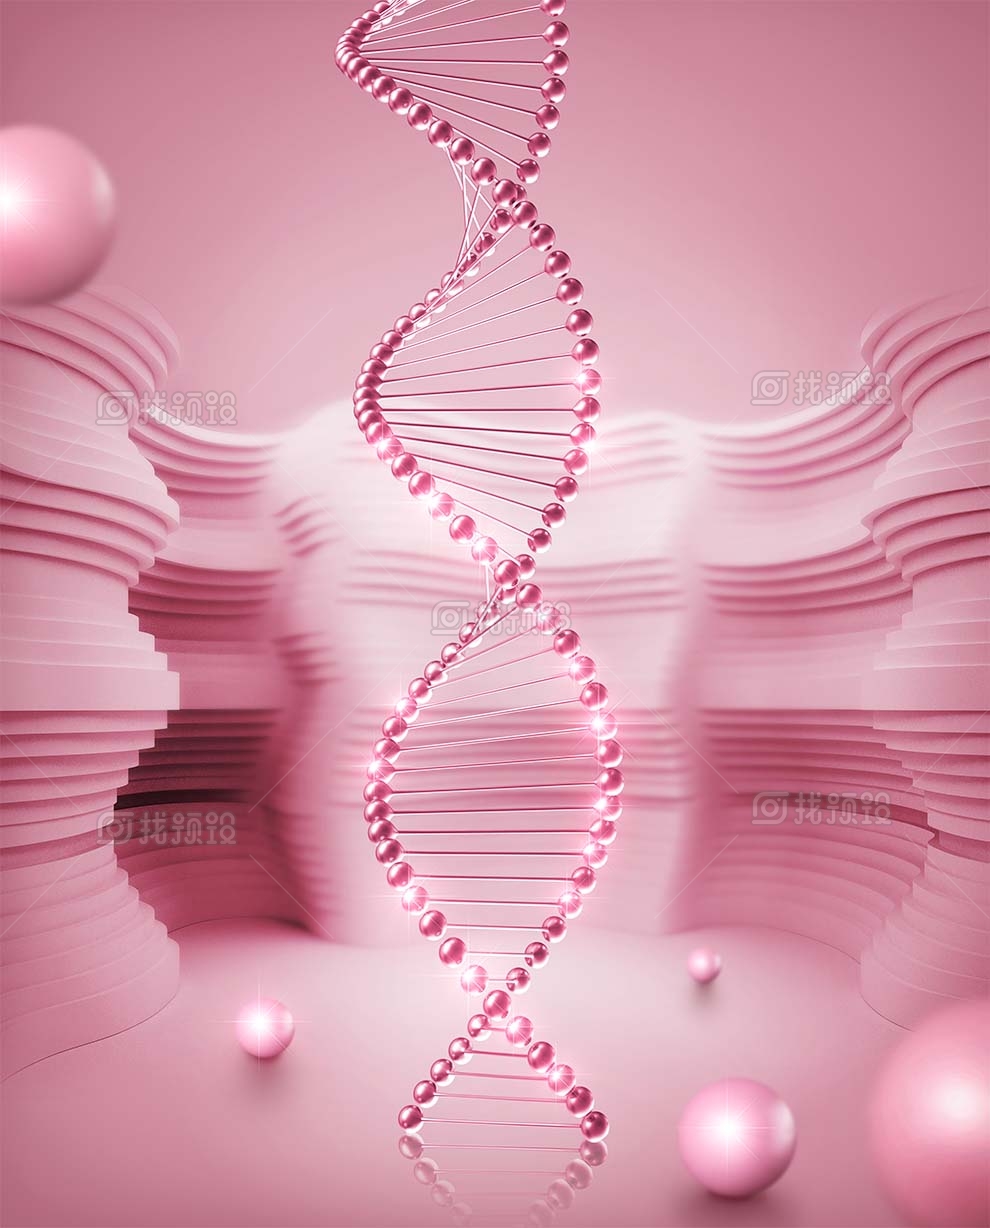 找预设网紫色基因链DNA结构螺旋psd素材下载2023年3月29日 1673880956 50c2e5ae43f23d6e80f8e8c1e925168e